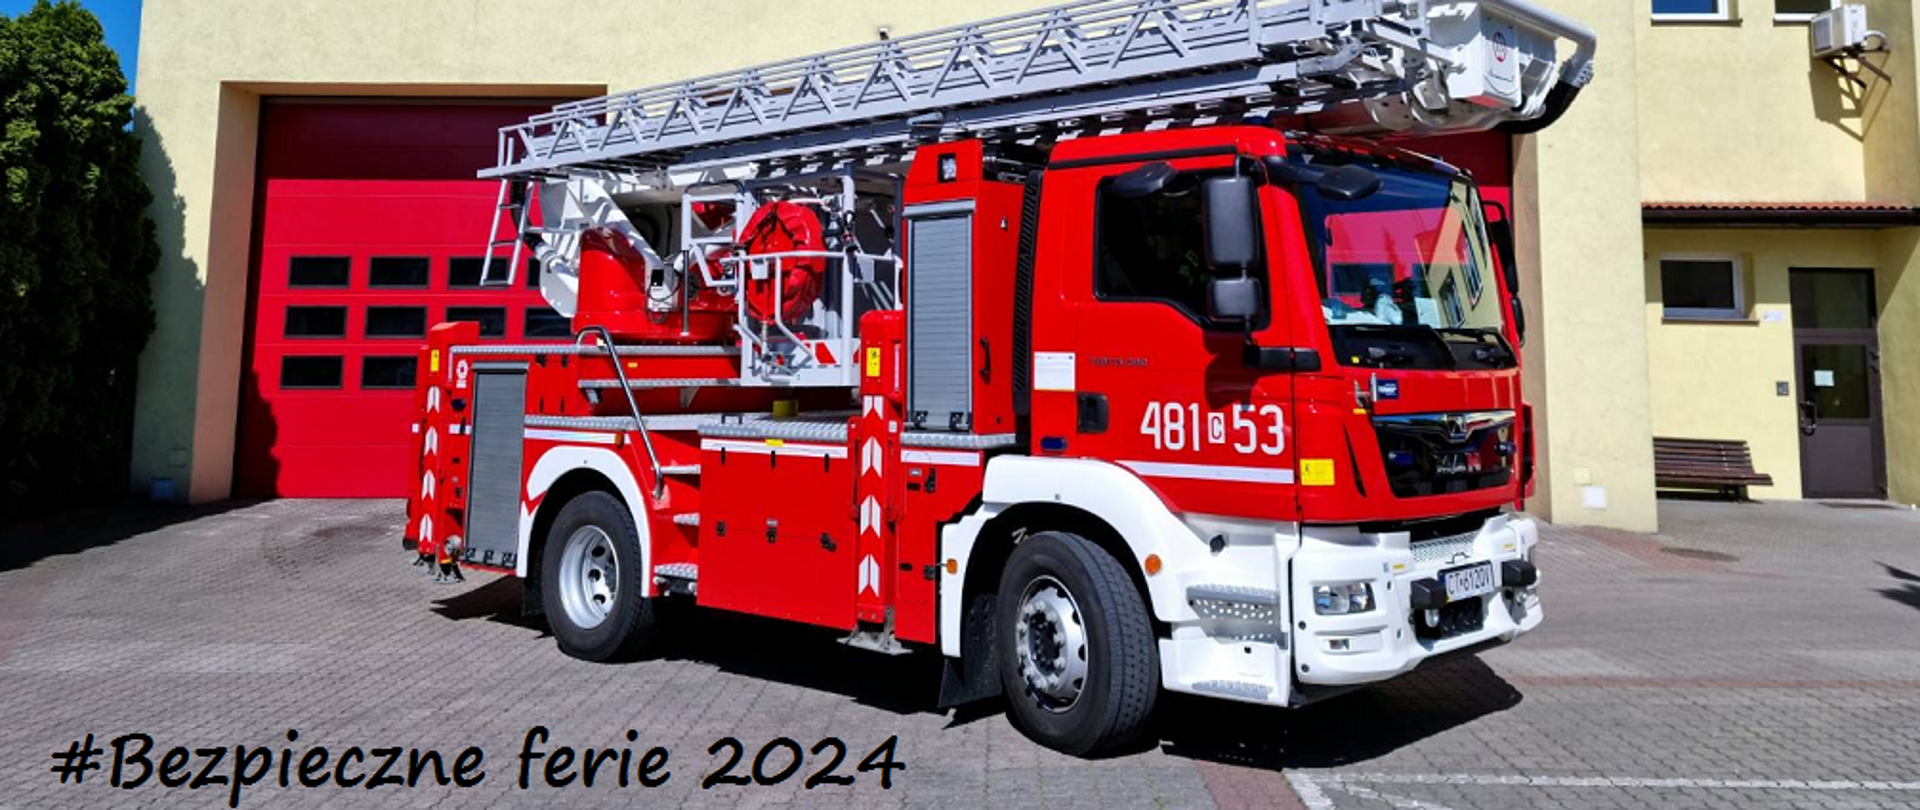 Samochód strażacki - podnośnik hydrauliczny na tle budynku komendy. Po lewej stronie napis "Bezpieczne ferie 2024"